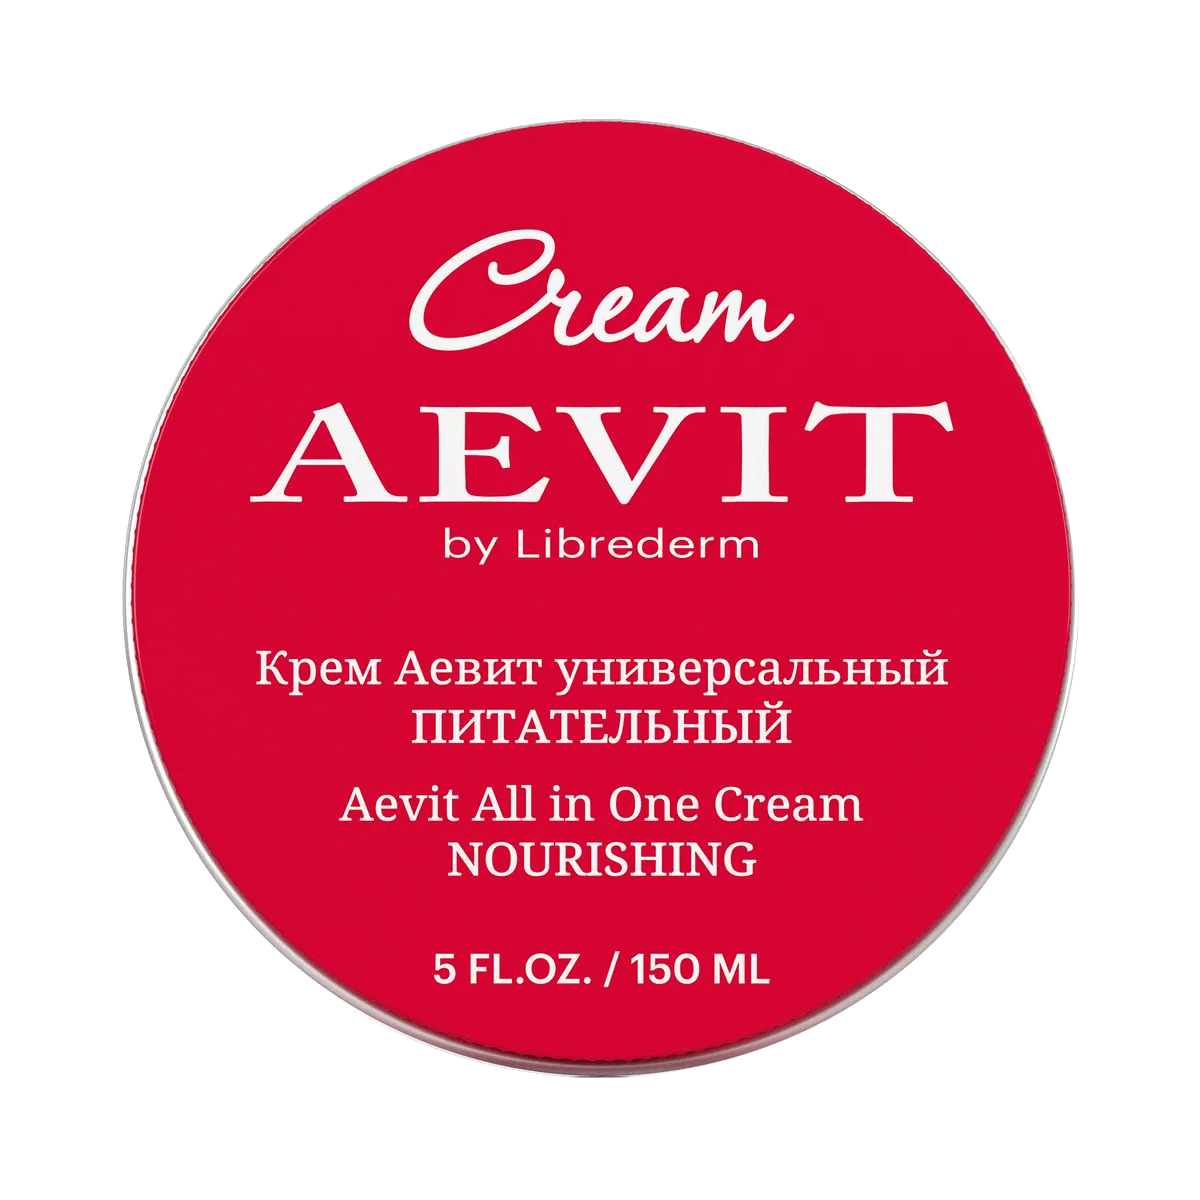 Крем Универсальный питательный, AEVIT, 150 мл, Librederm - фото 1